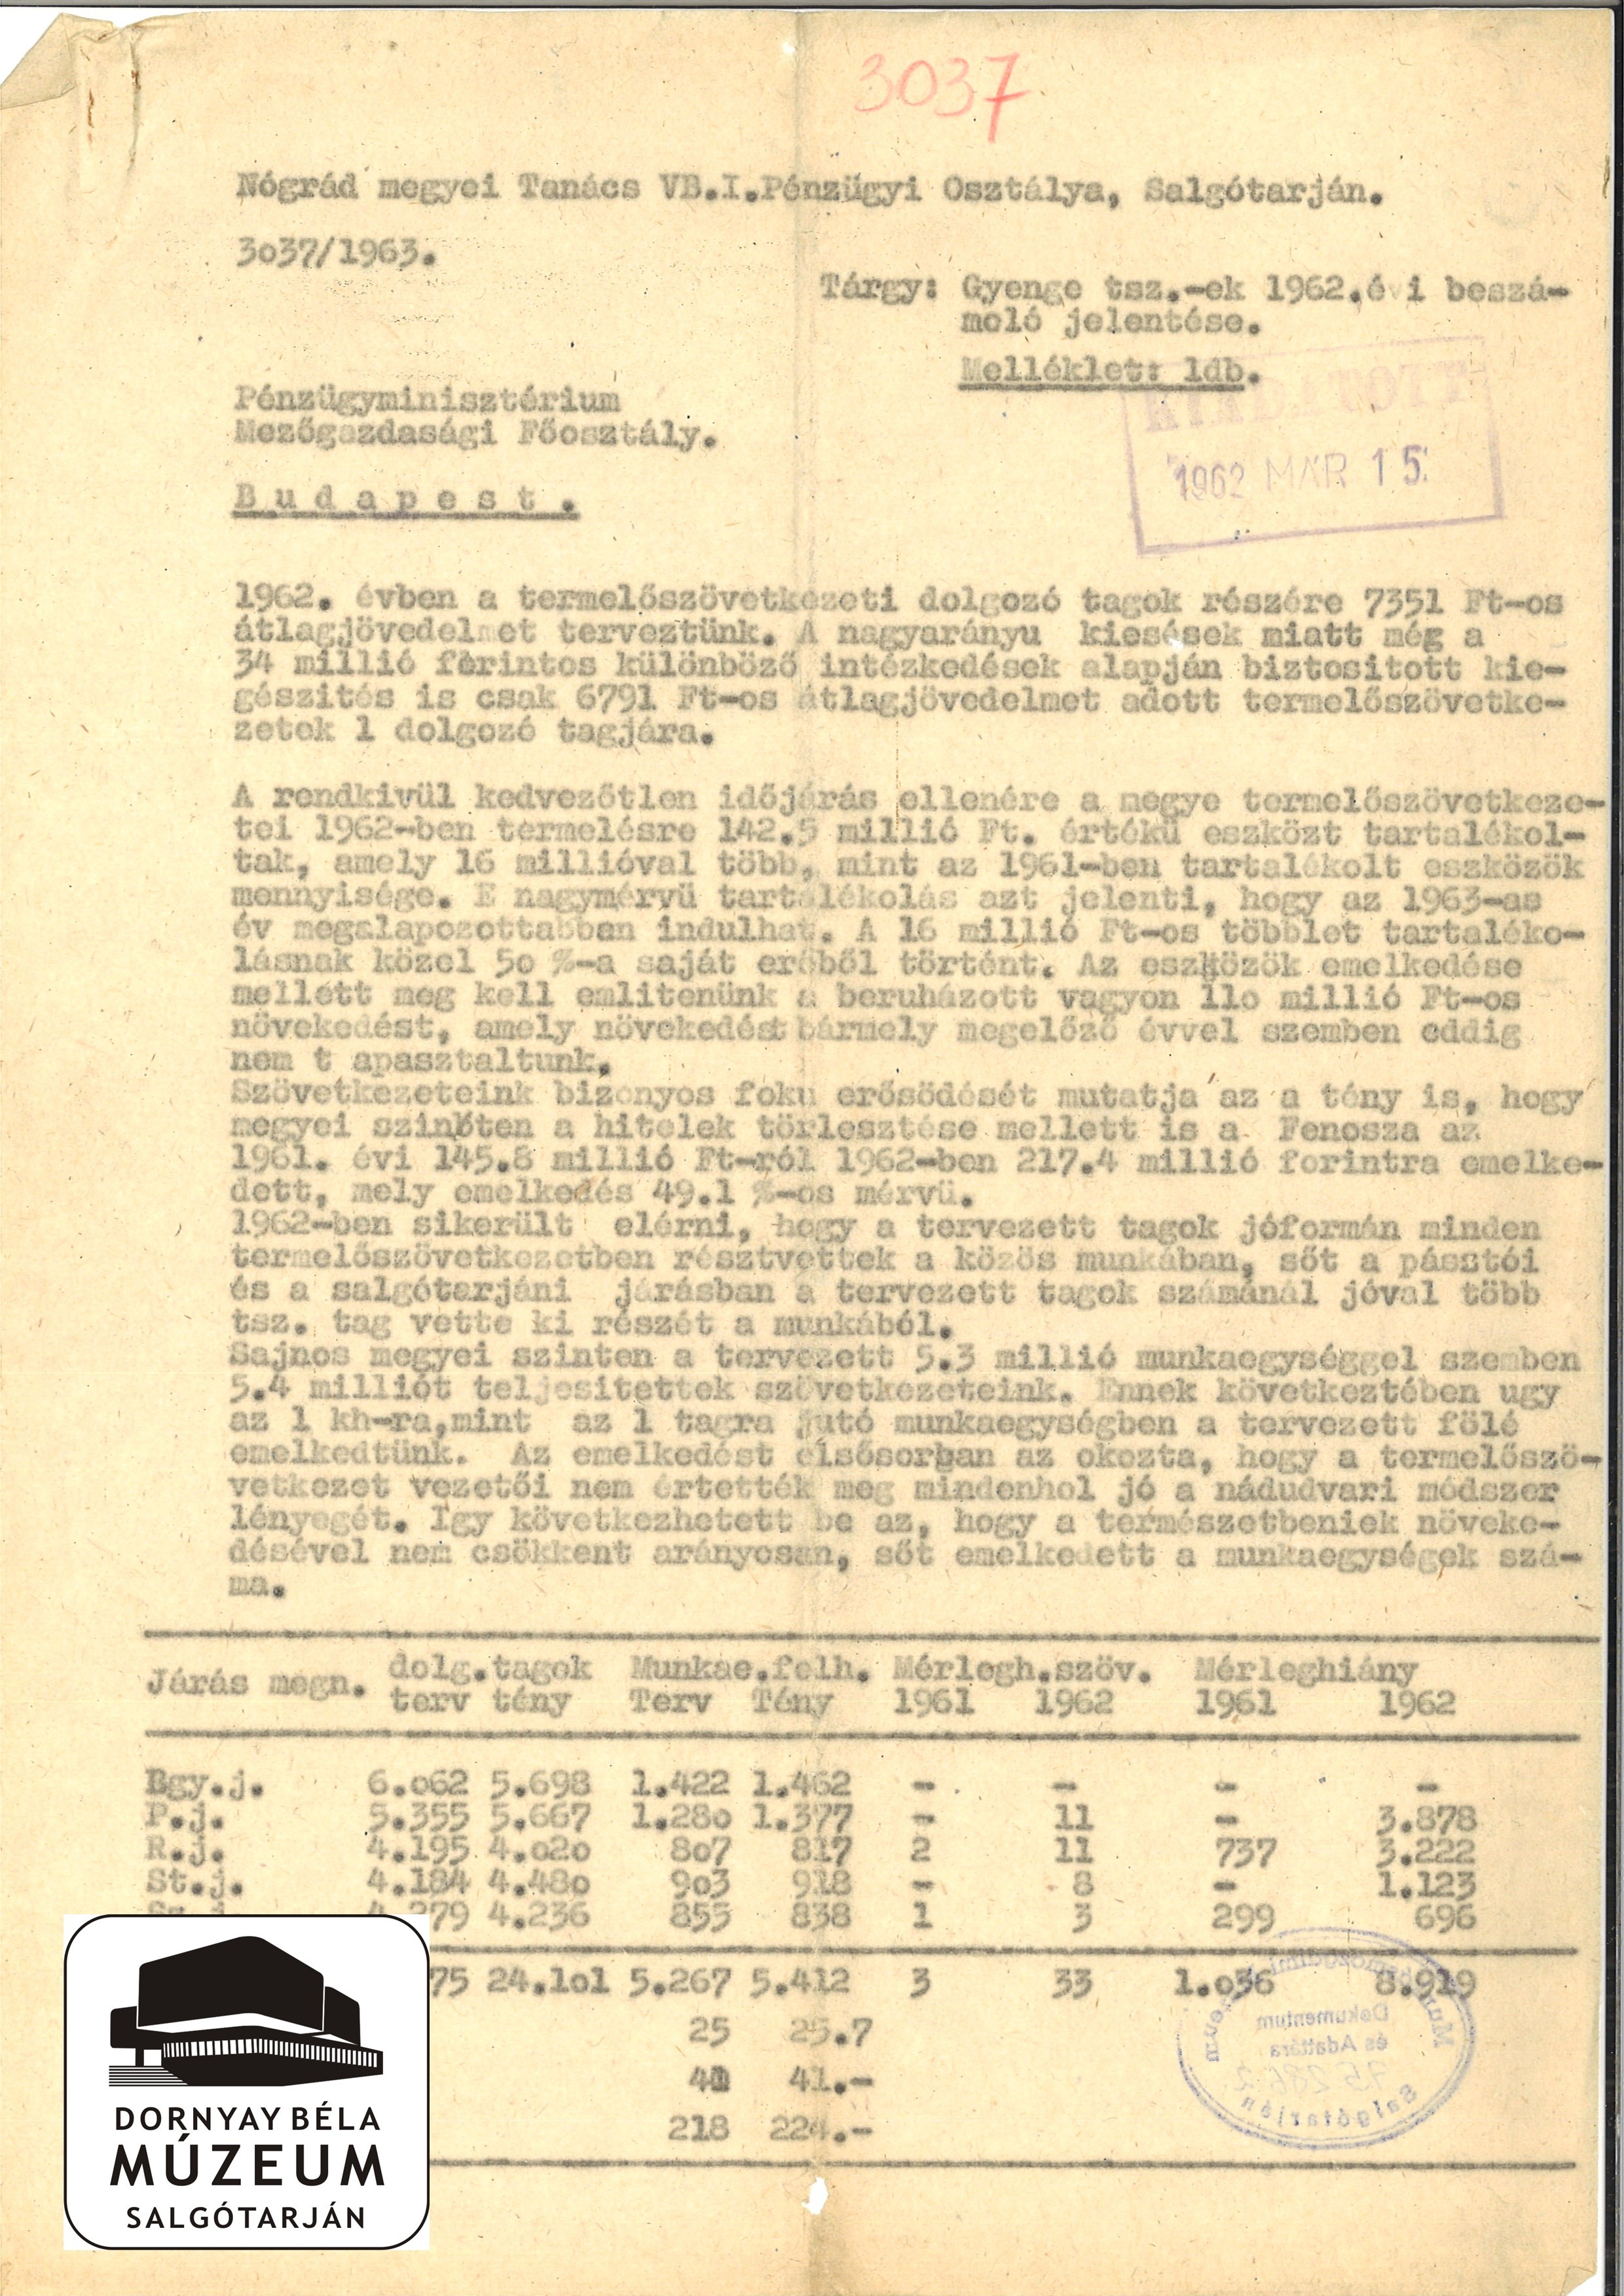 Nógrád megyei gyenge TSZ-ek 1962. évi beszámoló jelentése (Dornyay Béla Múzeum, Salgótarján CC BY-NC-SA)